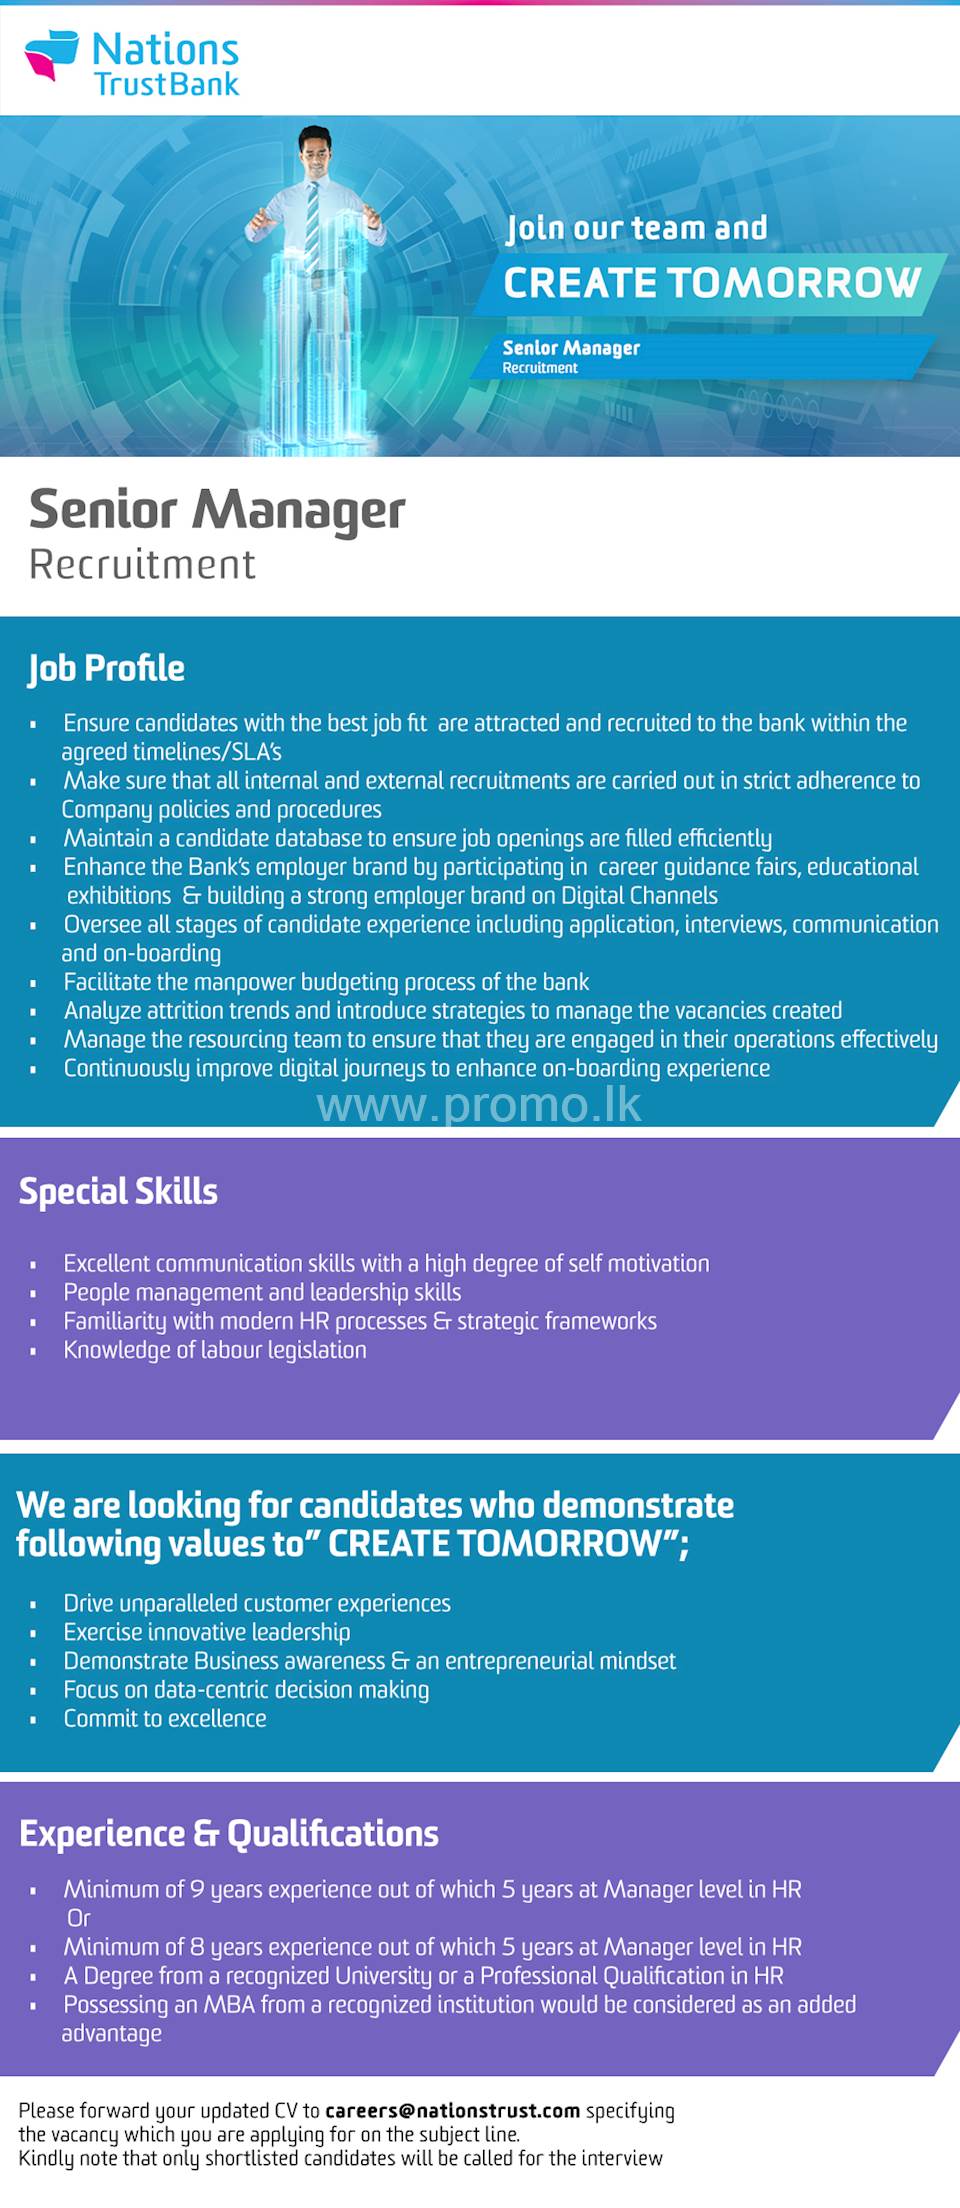 Senior Management - Recruitment